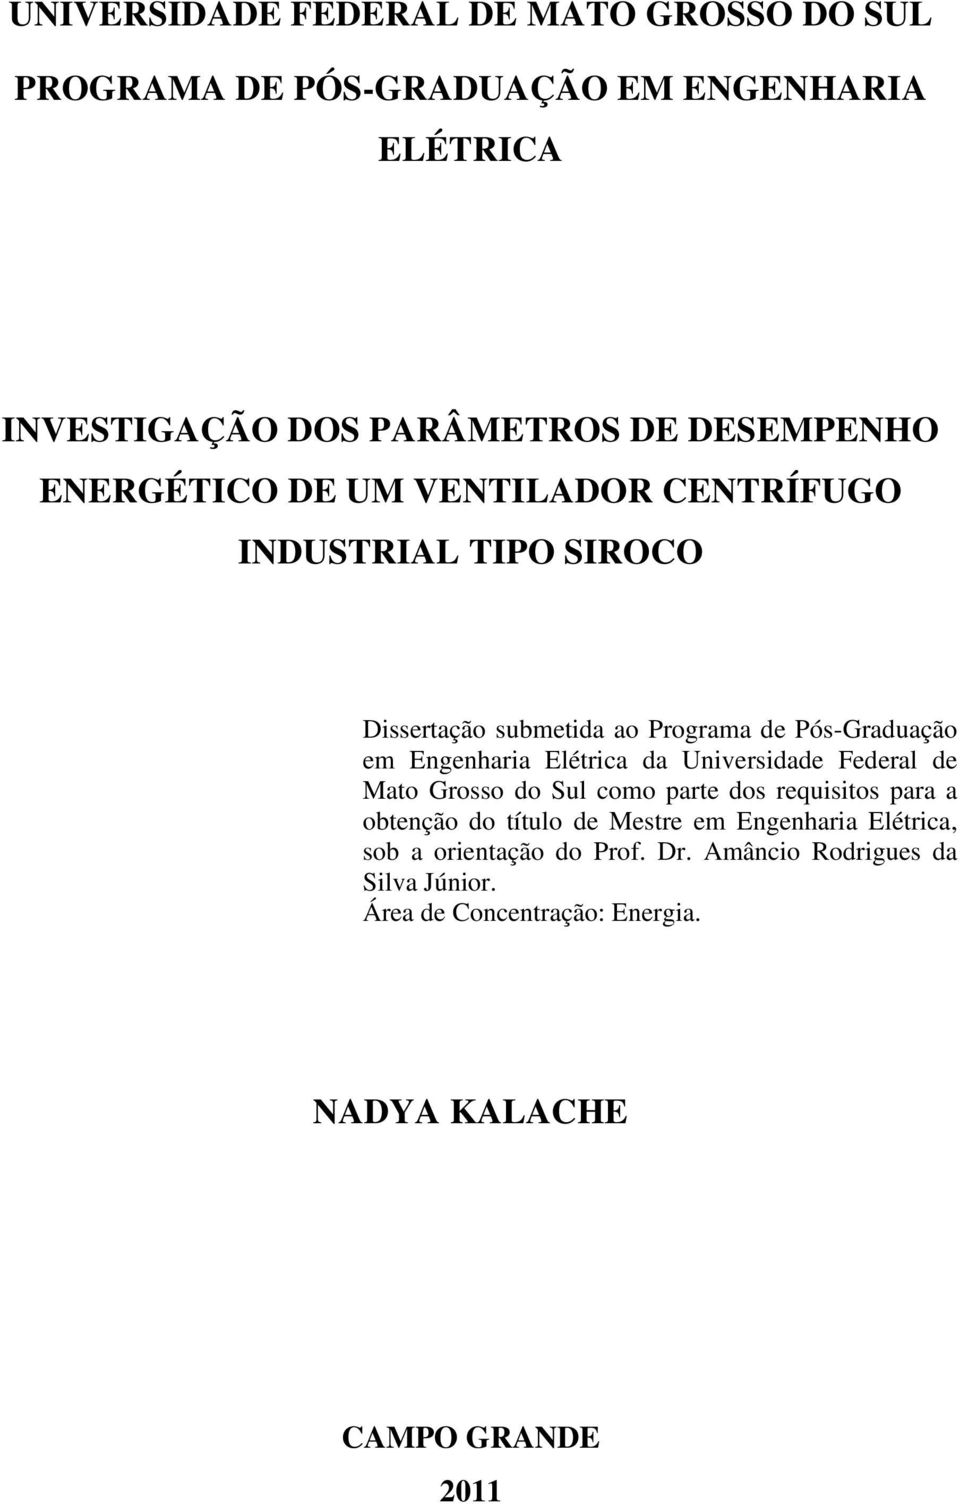 Engenharia Elétrica da Universidade Federal de Mato Grosso do Sul como parte dos requisitos para a obtenção do título de Mestre em